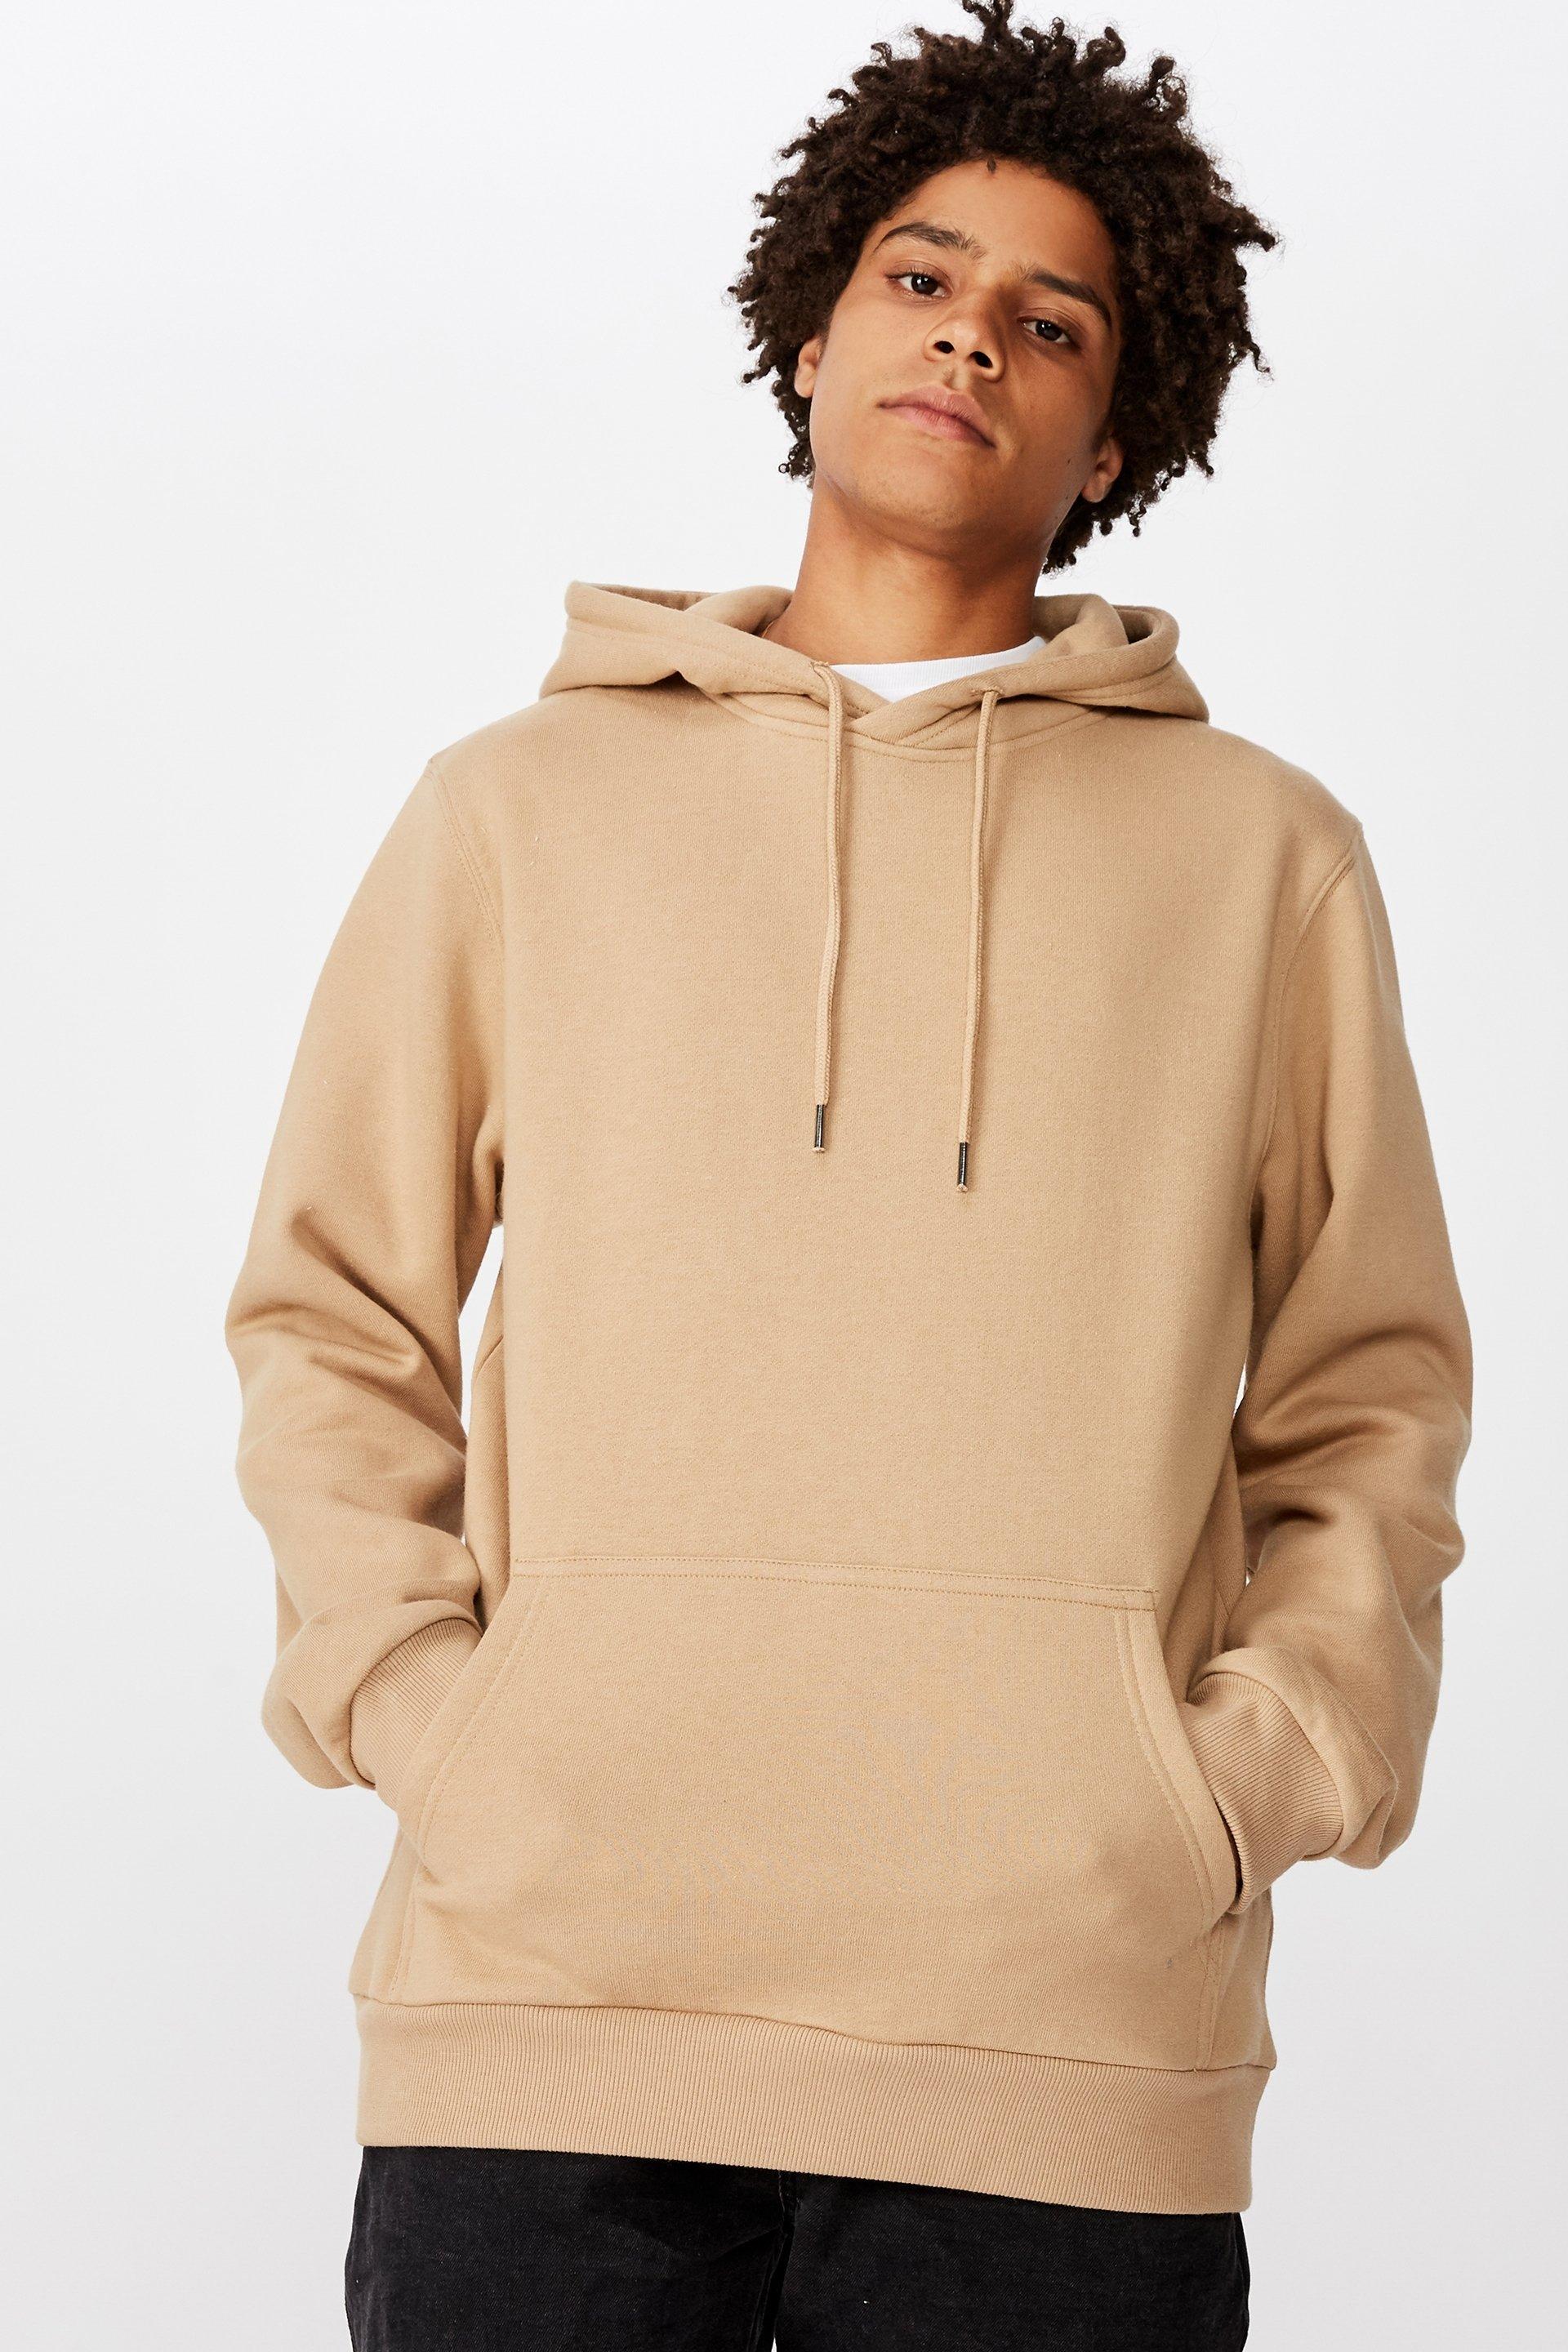 Basic hoodie - desert brown Factorie Hoodies & Sweats | Superbalist.com